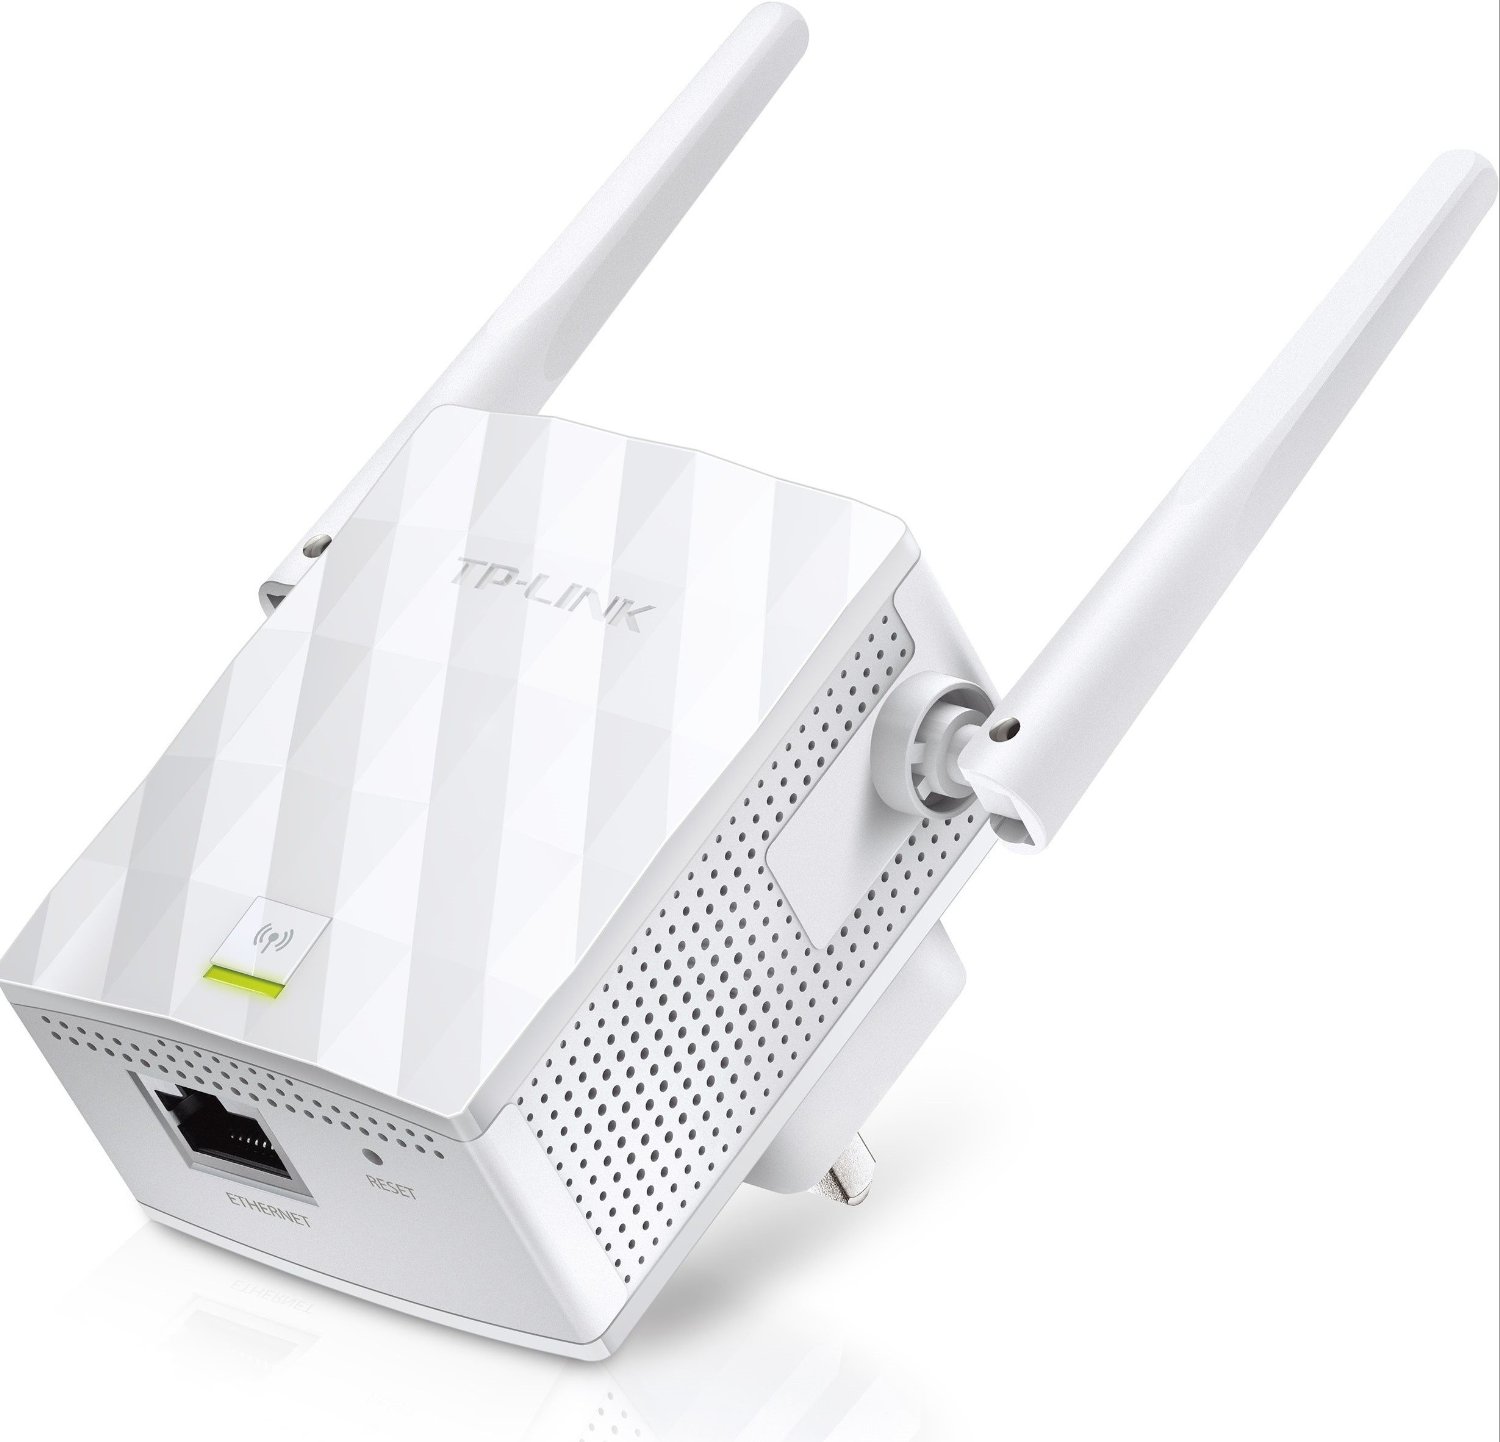 Wifi повторитель купить. Wi-Fi усилитель сигнала (репитер) TP-link TL-wa855re. TP-link TL-wa855re. Усилитель беспроводного сигнала TP-link TL-wa855re. TP link усилитель сигнала WIFI.